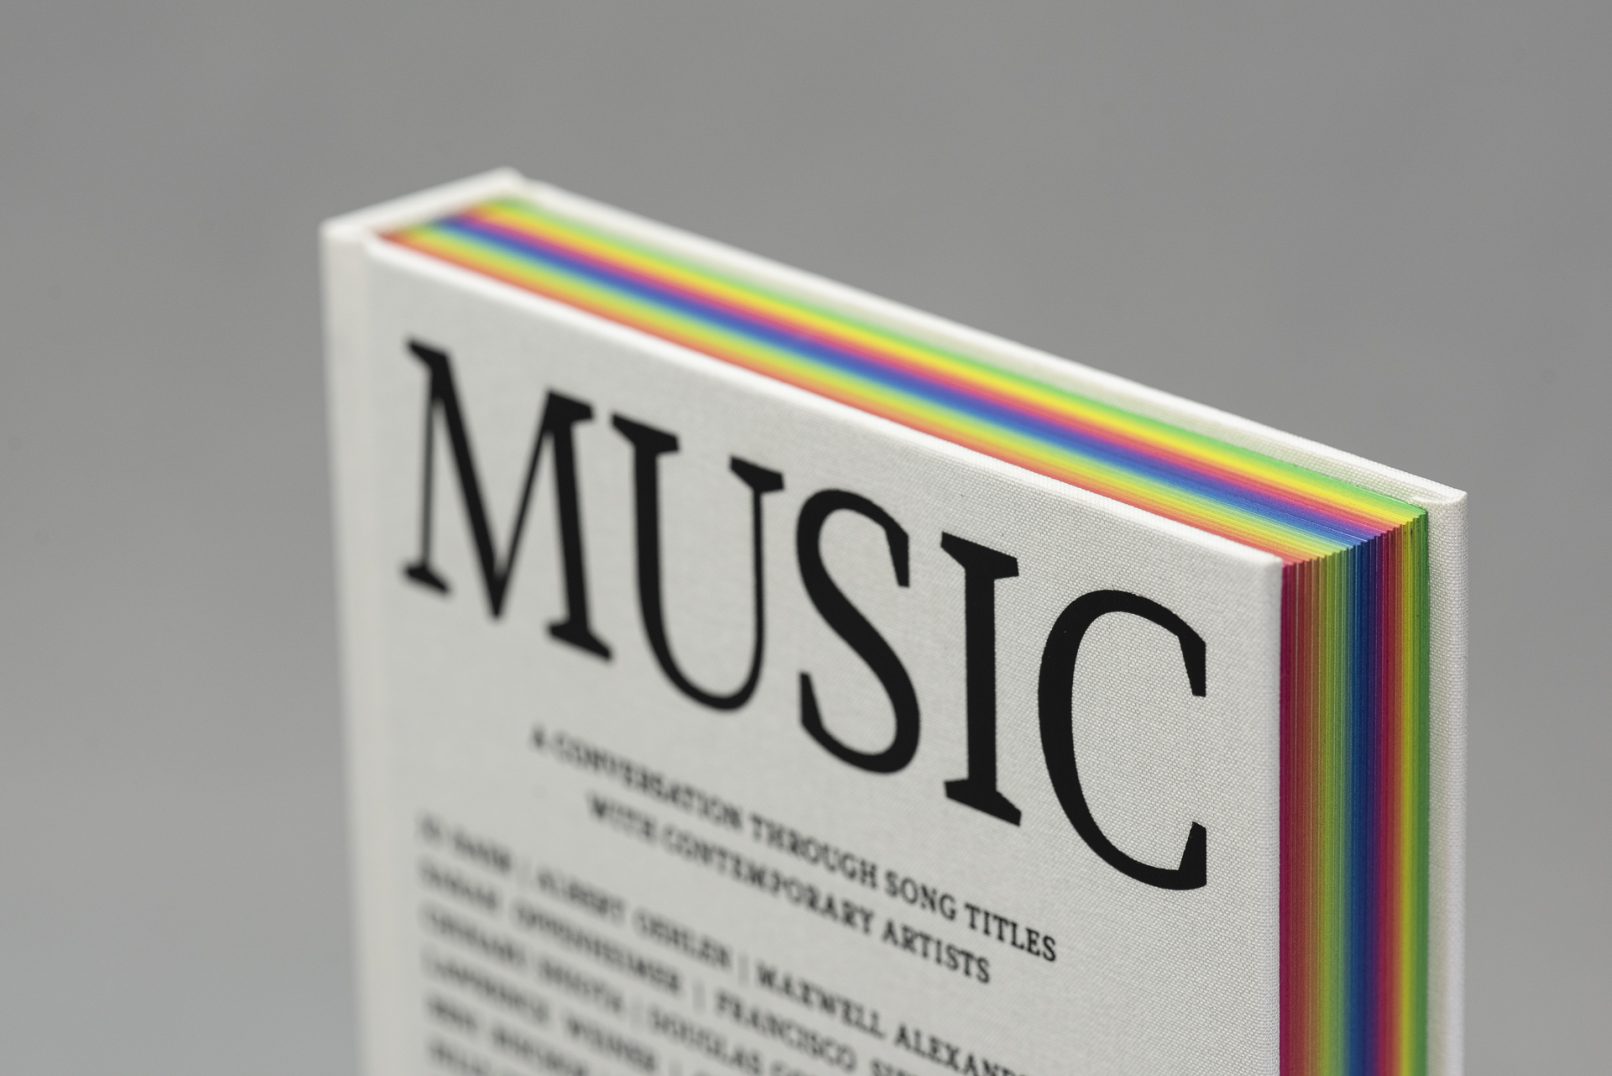 Titel der Publikation MUSIC, geprägt auf weißes Leinen.